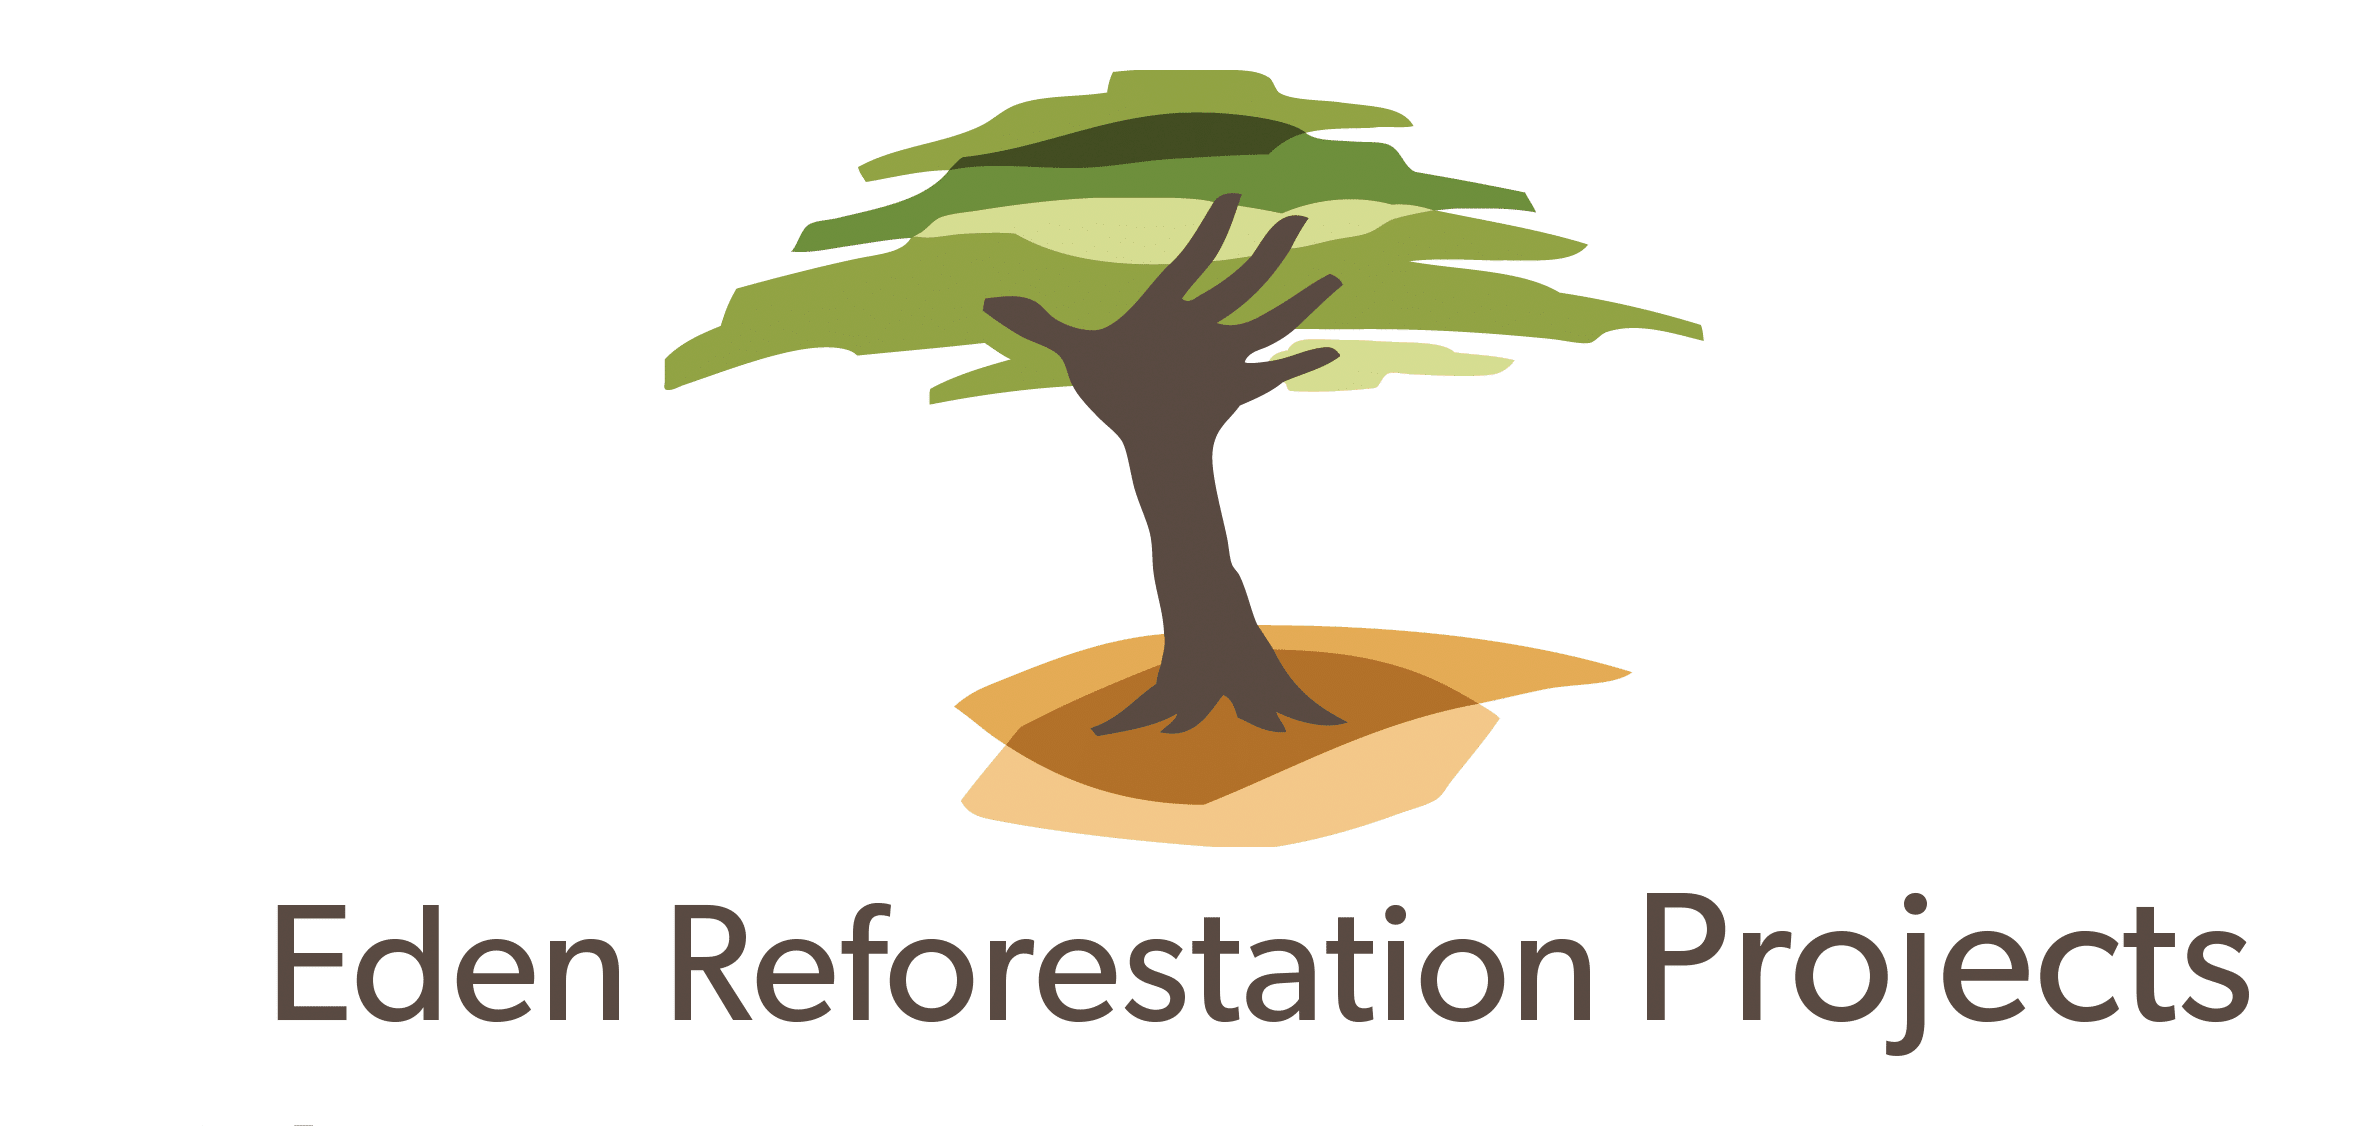 FairVenture - Partner Eden Reforestation Projects